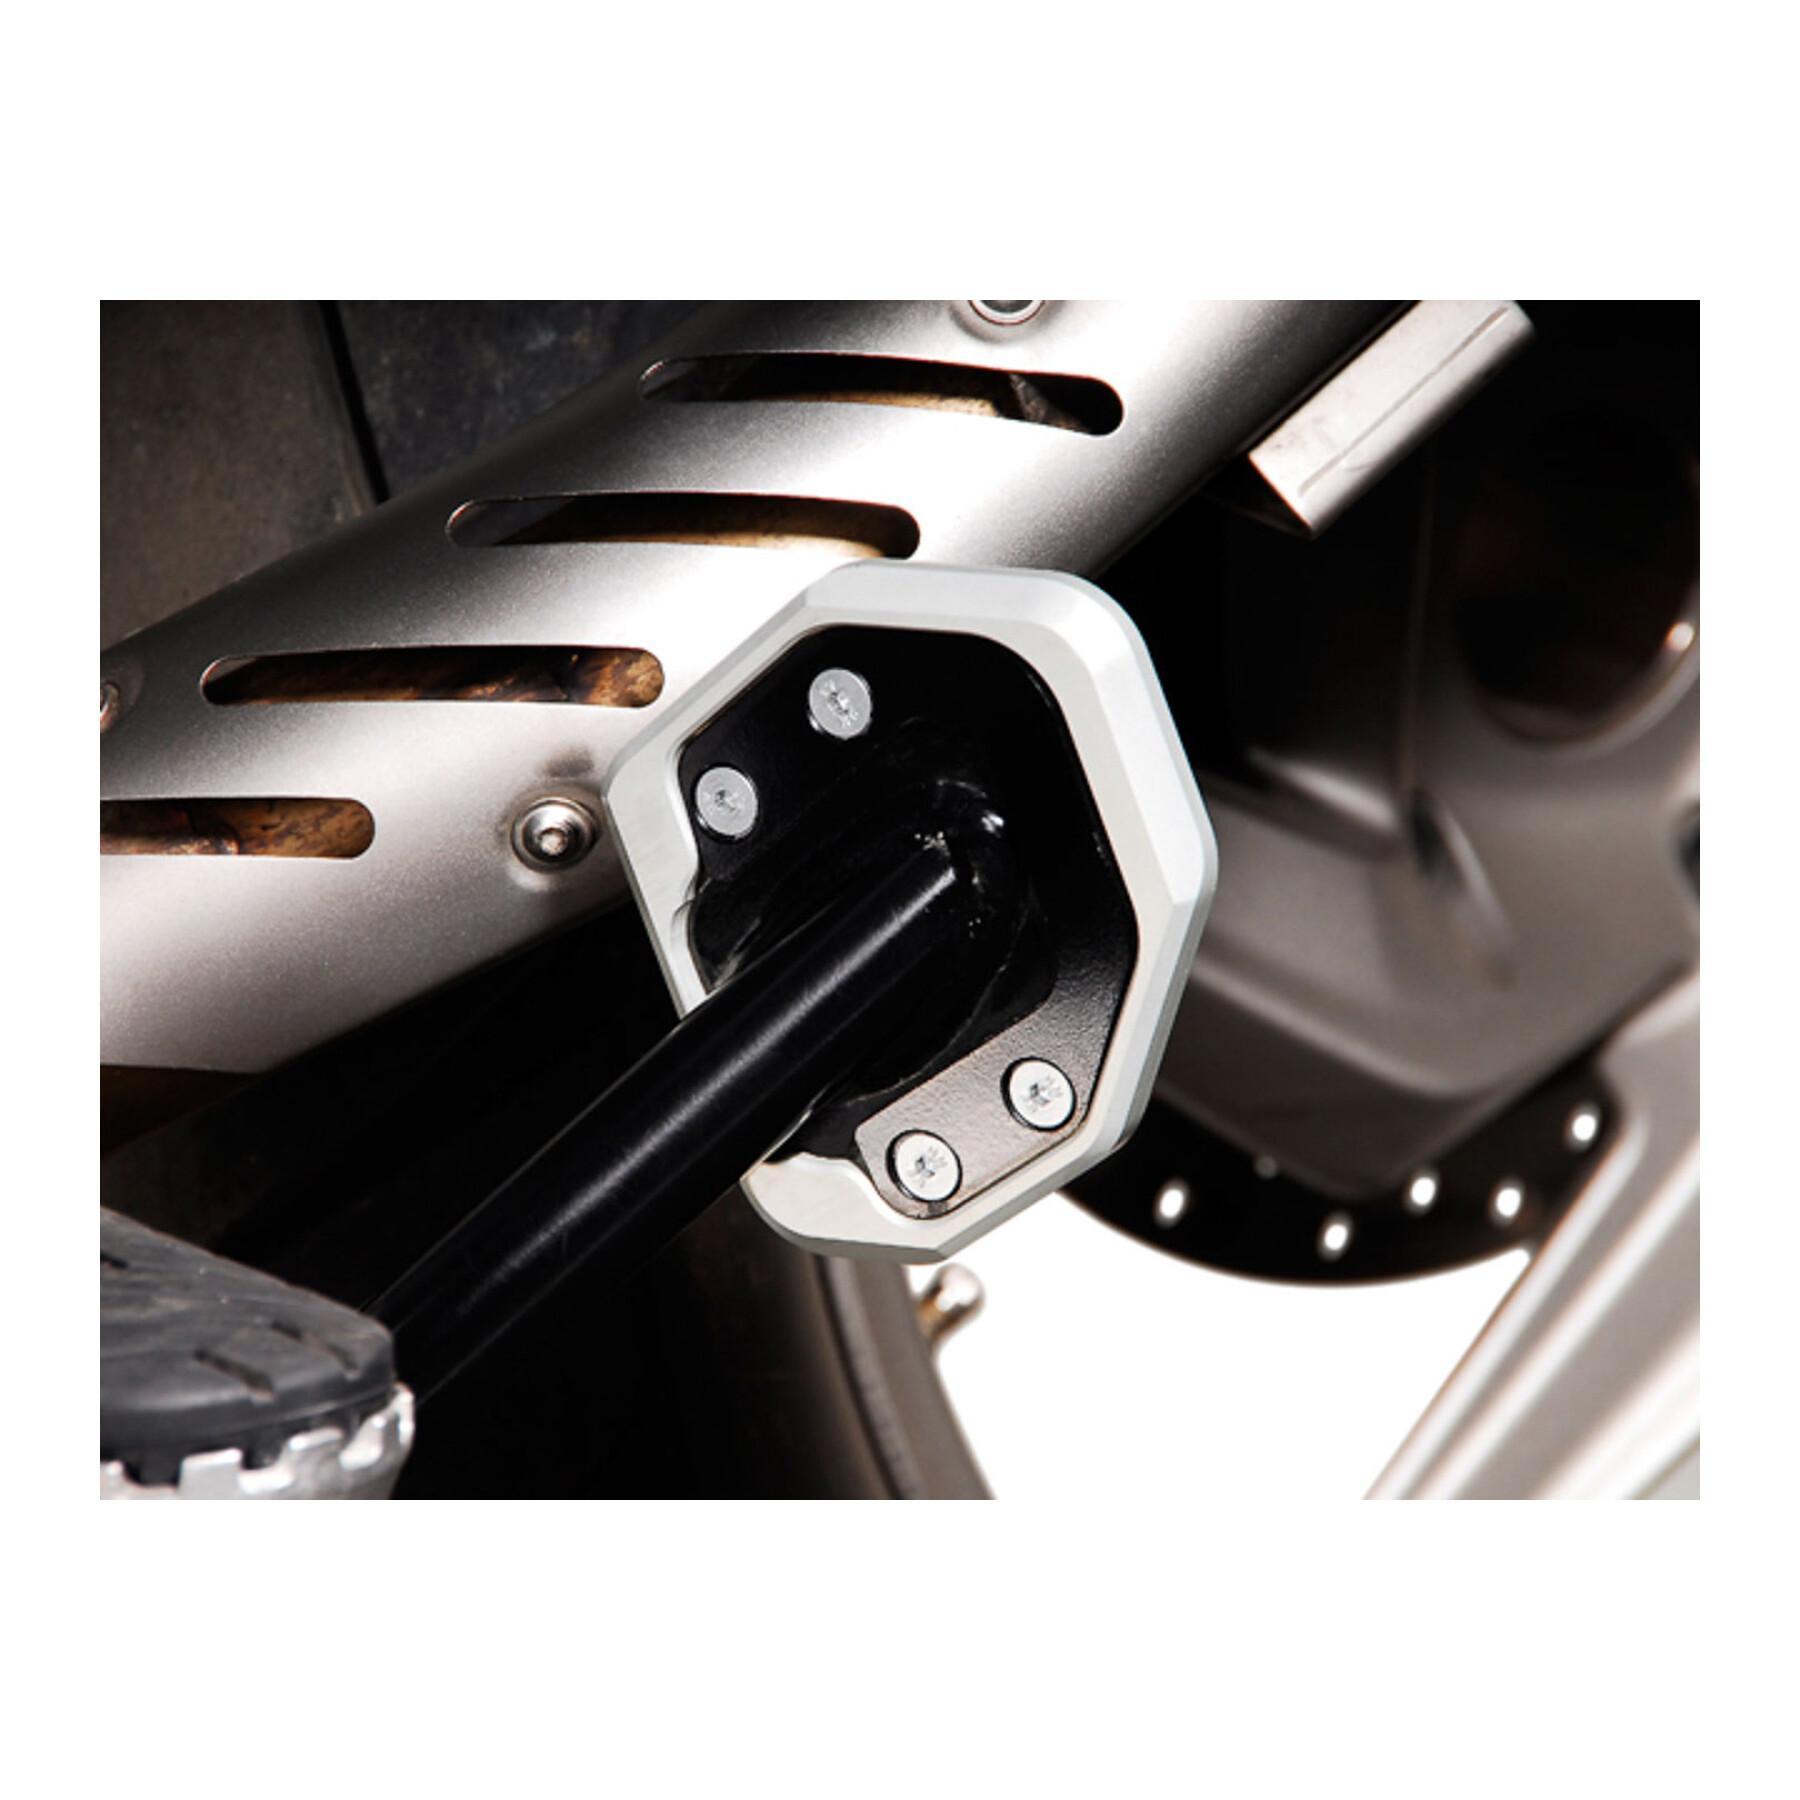 Przedłużenie podpórki bocznej motocykla SW-Motech Bmw R1200GS / R1200GS Adventure.